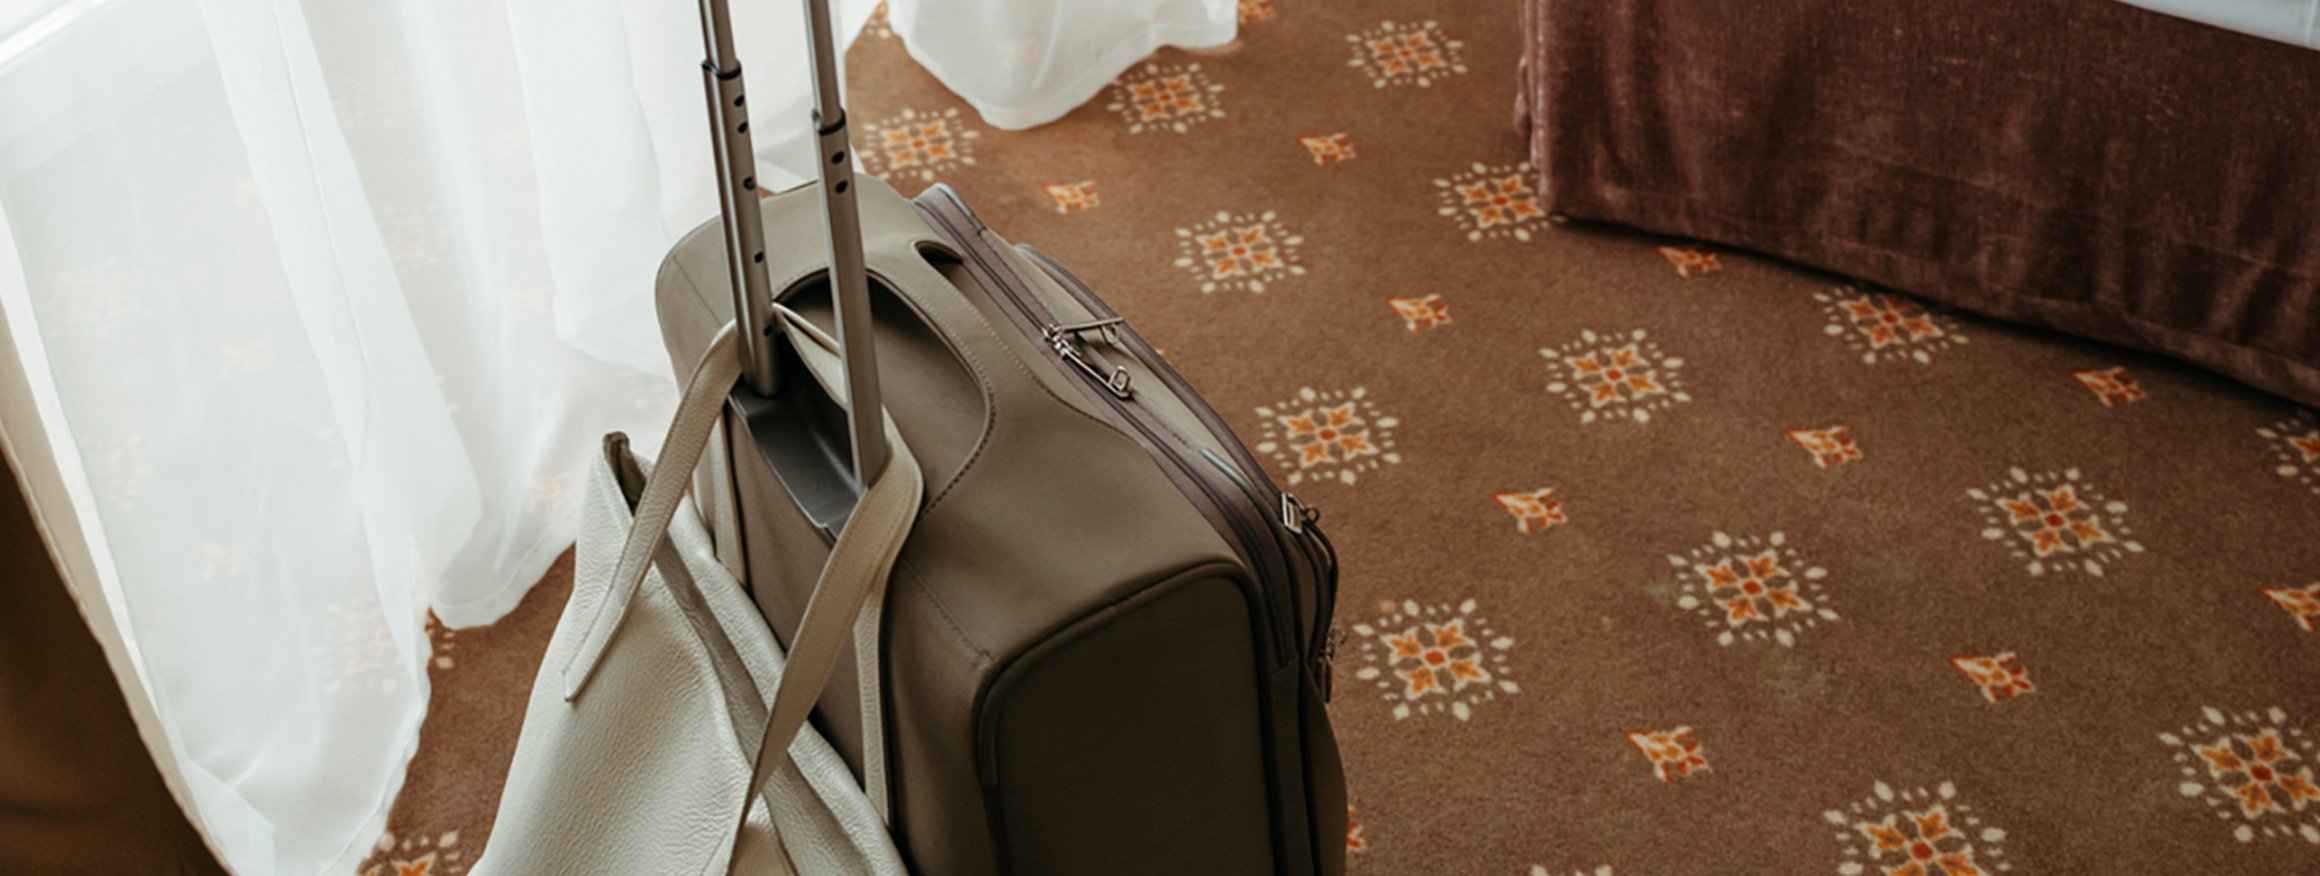 Ein Rollkoffer, an dem eine Handtasche hängt, steht auf dem Teppich eines Hotelzimmers